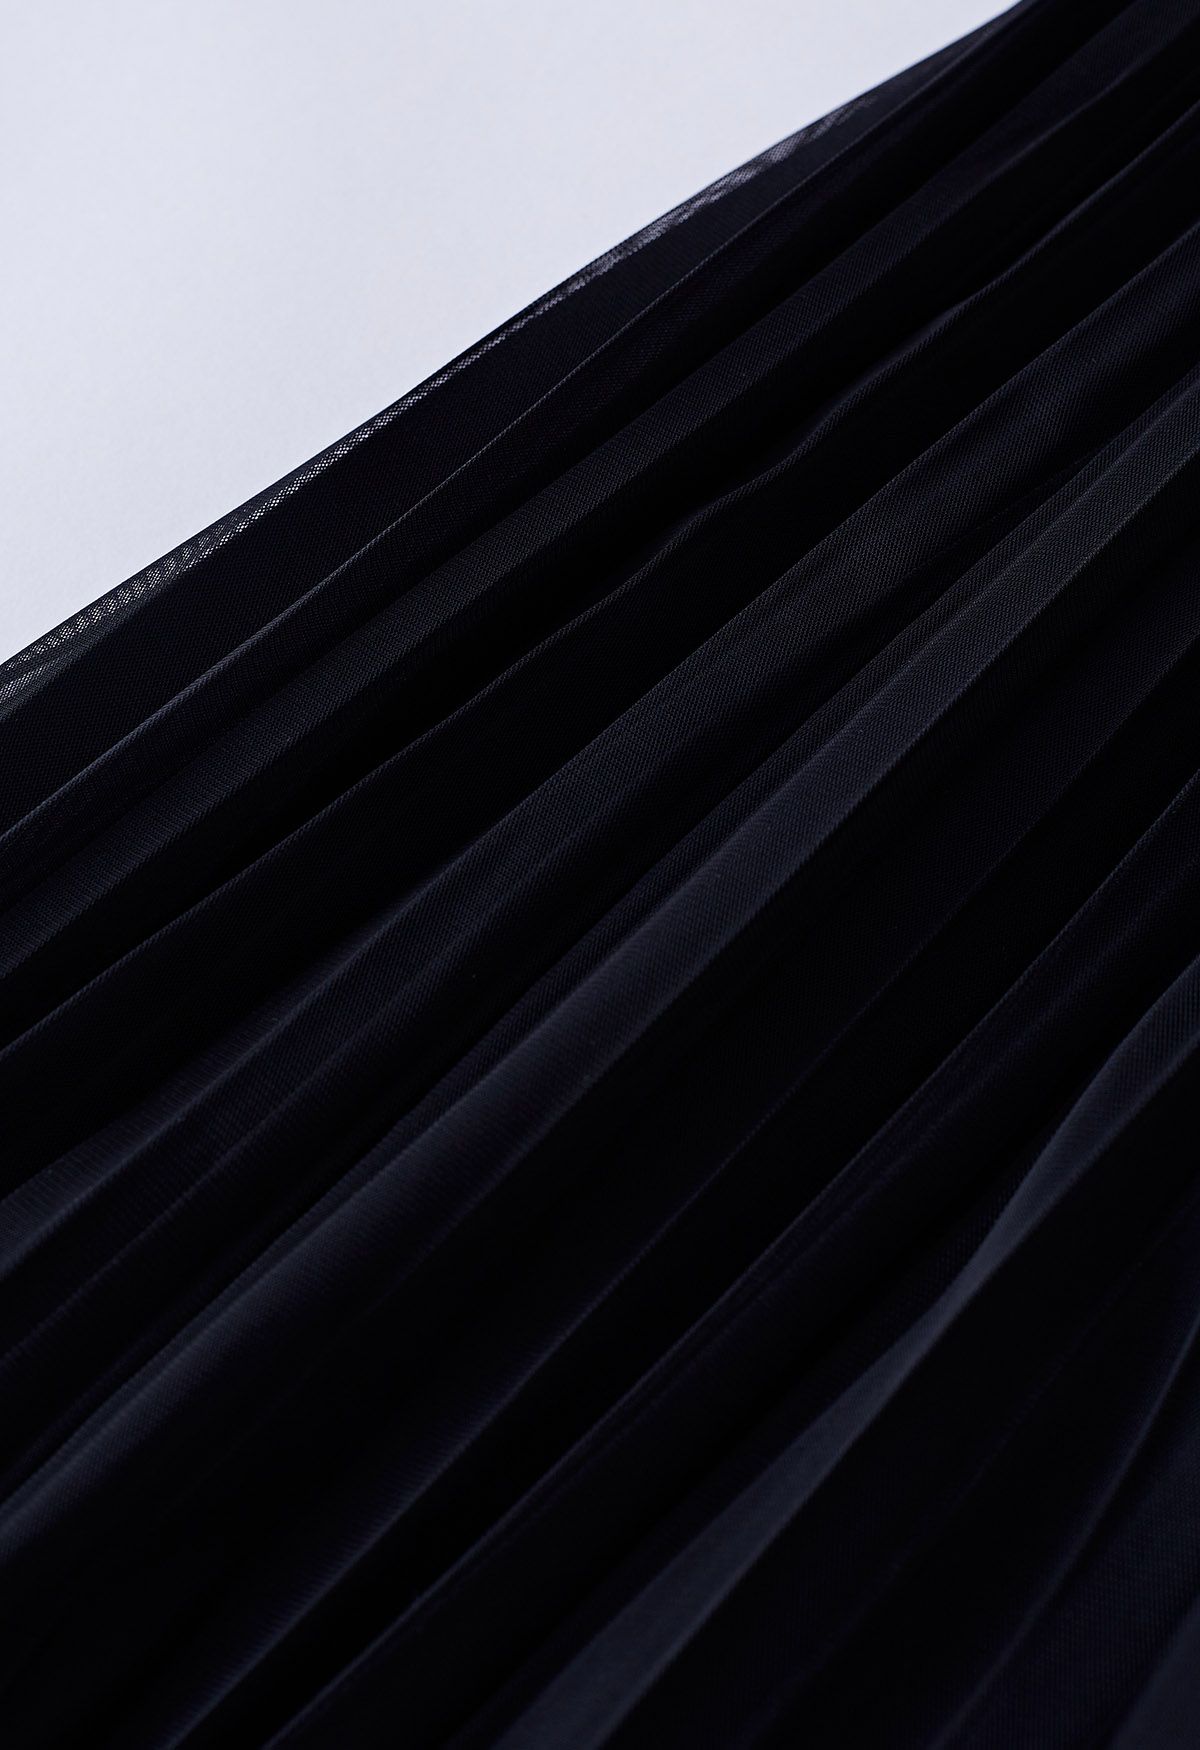 Falda midi de tul de malla plisada con paneles en negro